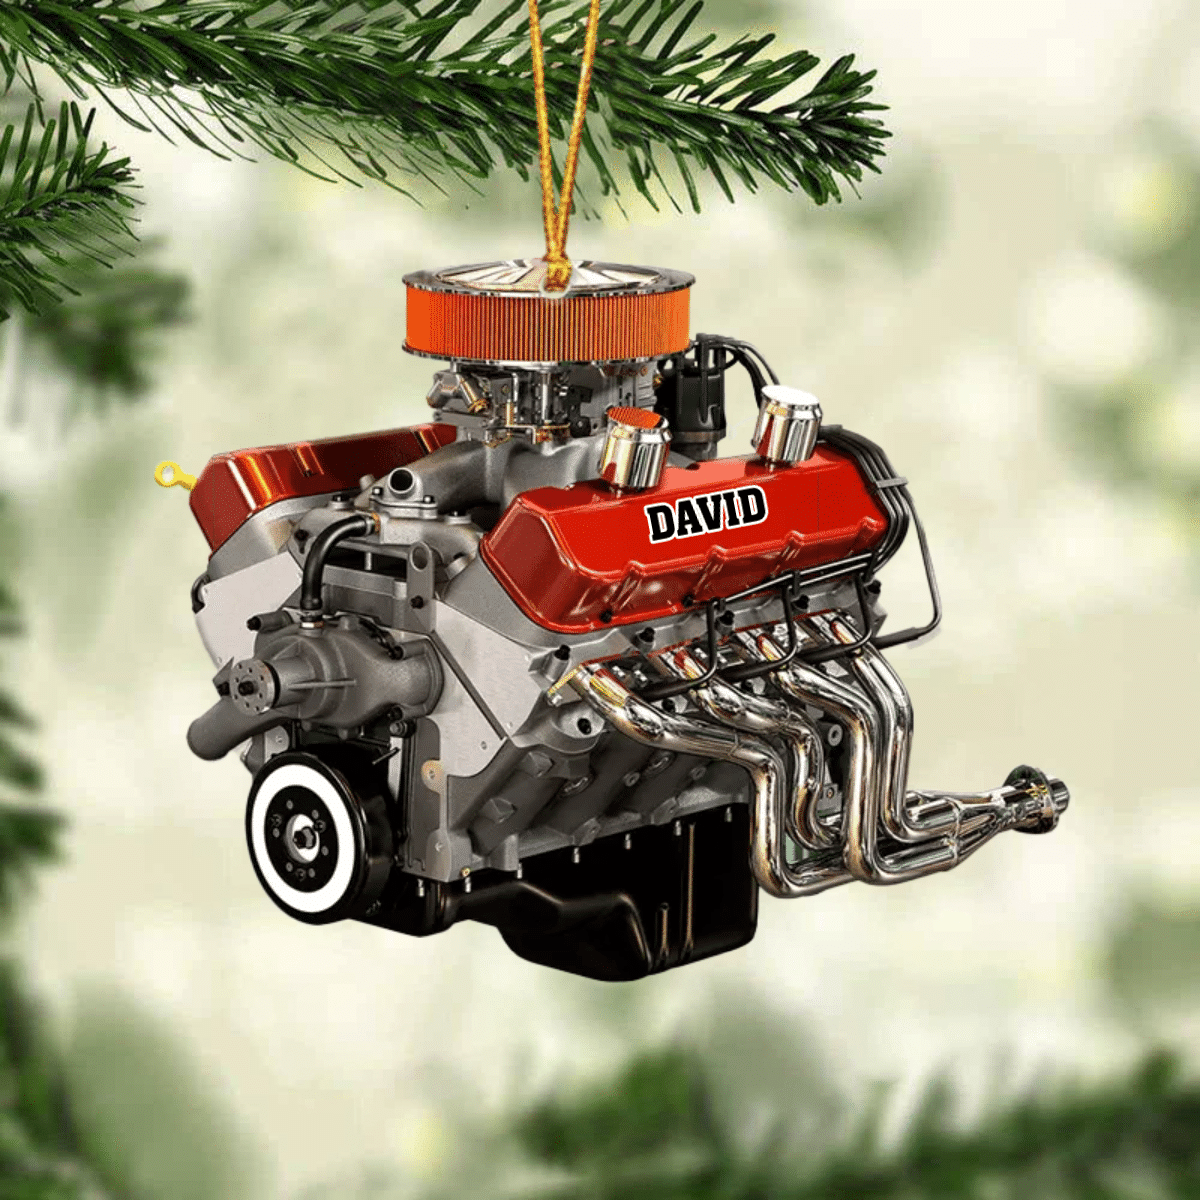 Drag Racing Hot Rod V8 Engine/ Custom Drag Racing Ornament/ Christmas Gift For Racing Lovers